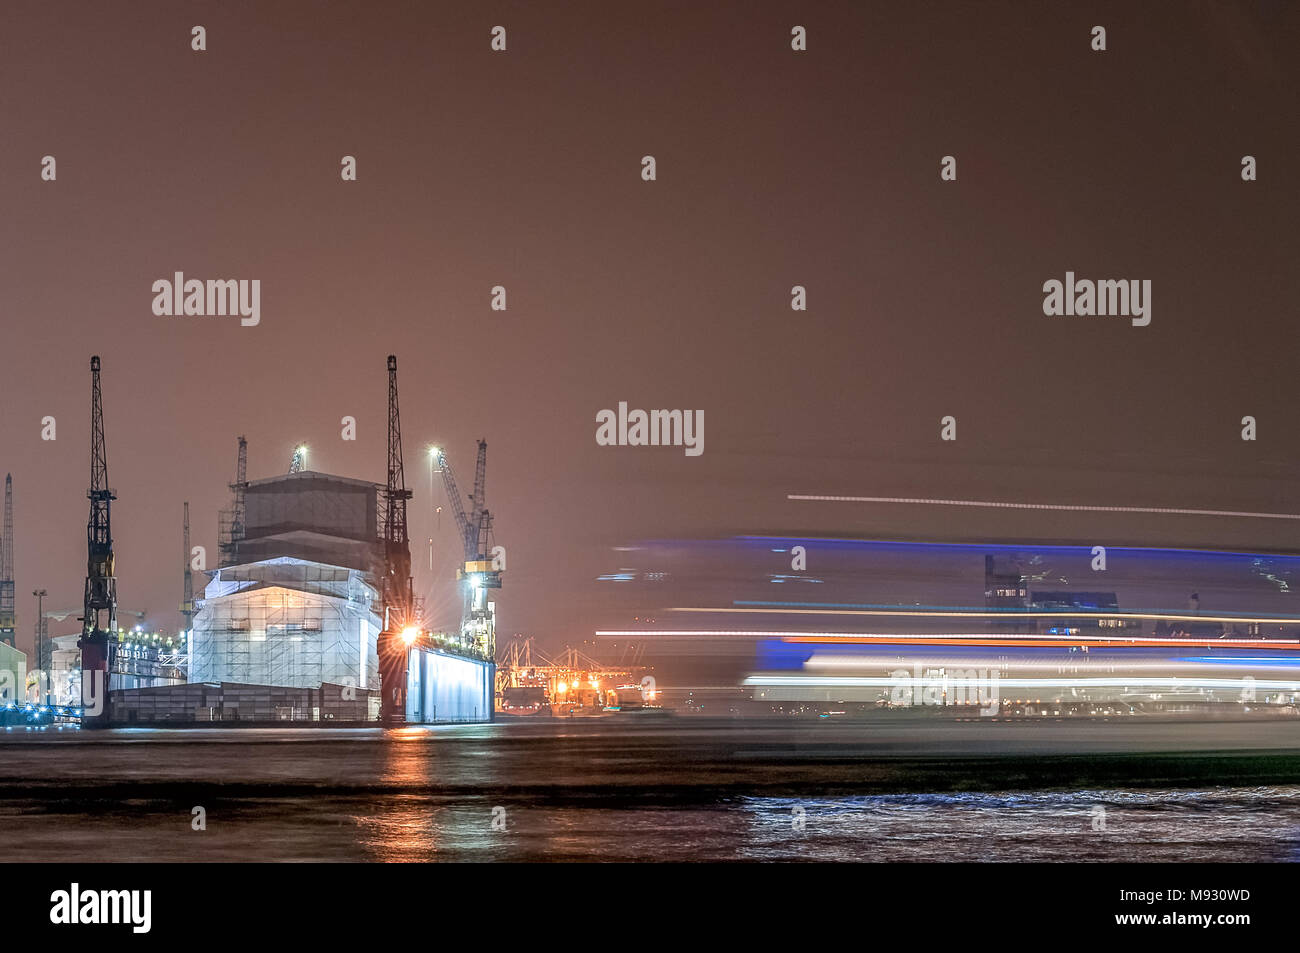 Hamburg, Deutschland. 03. April 2014: Lange Exposition der Werft Blohm + Voss und Fähre in der Nacht. Stockfoto